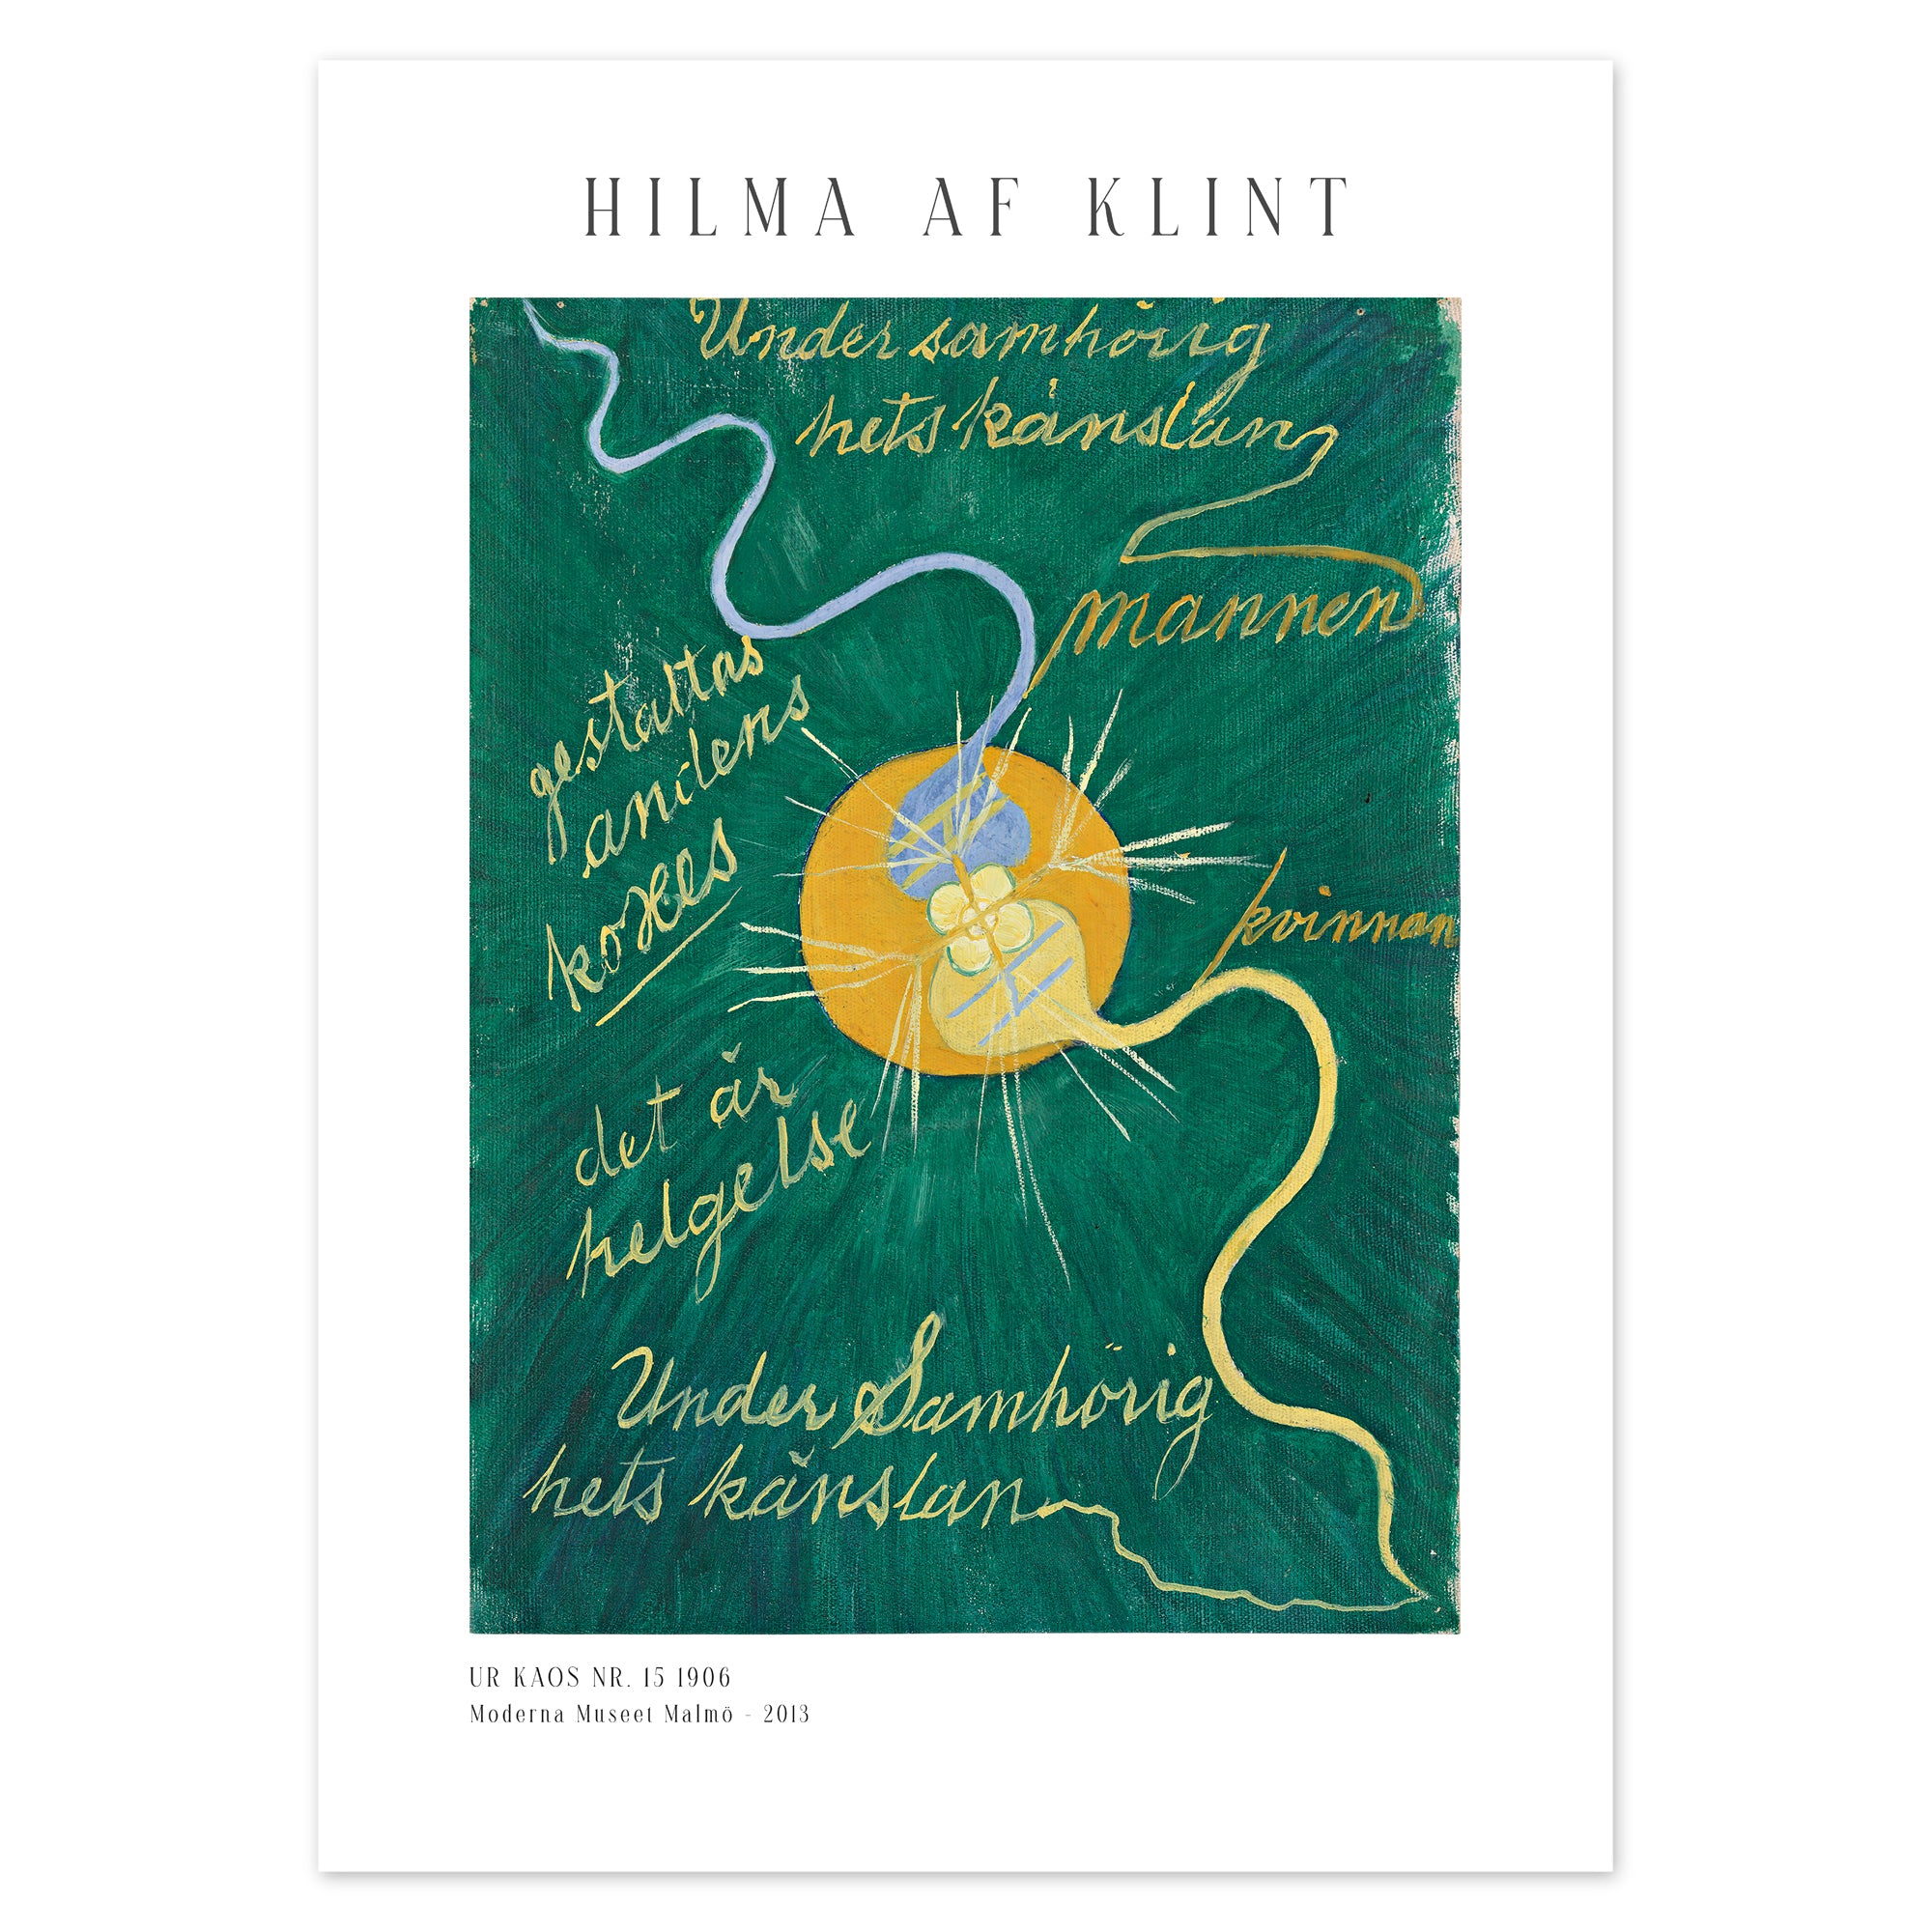 Hilma af Klint Poster - Urkaos nr. 15